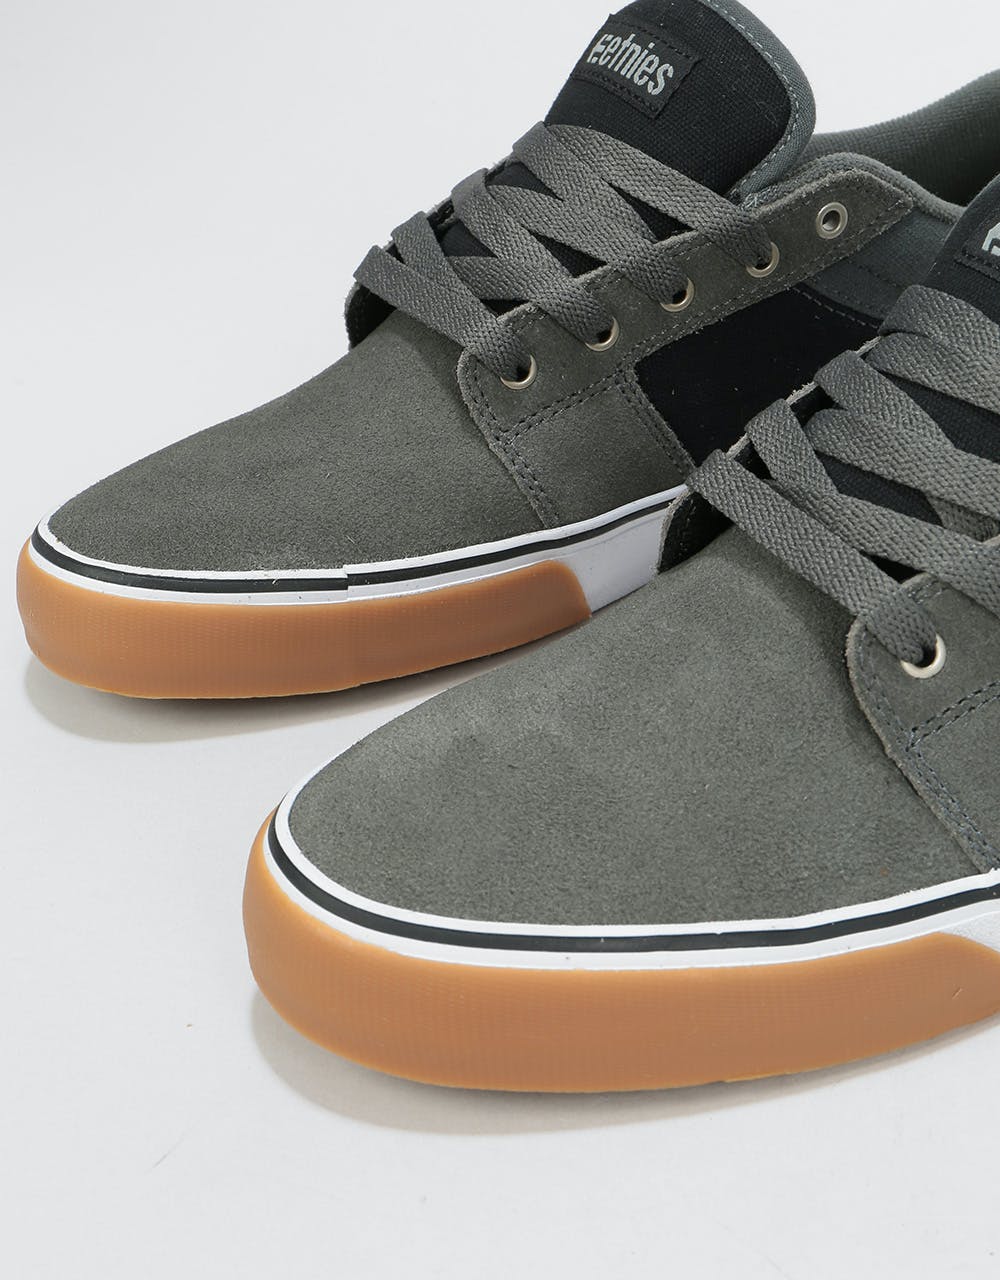 Etnies Barge LS Skate Shoes - Grey/Black/Silver